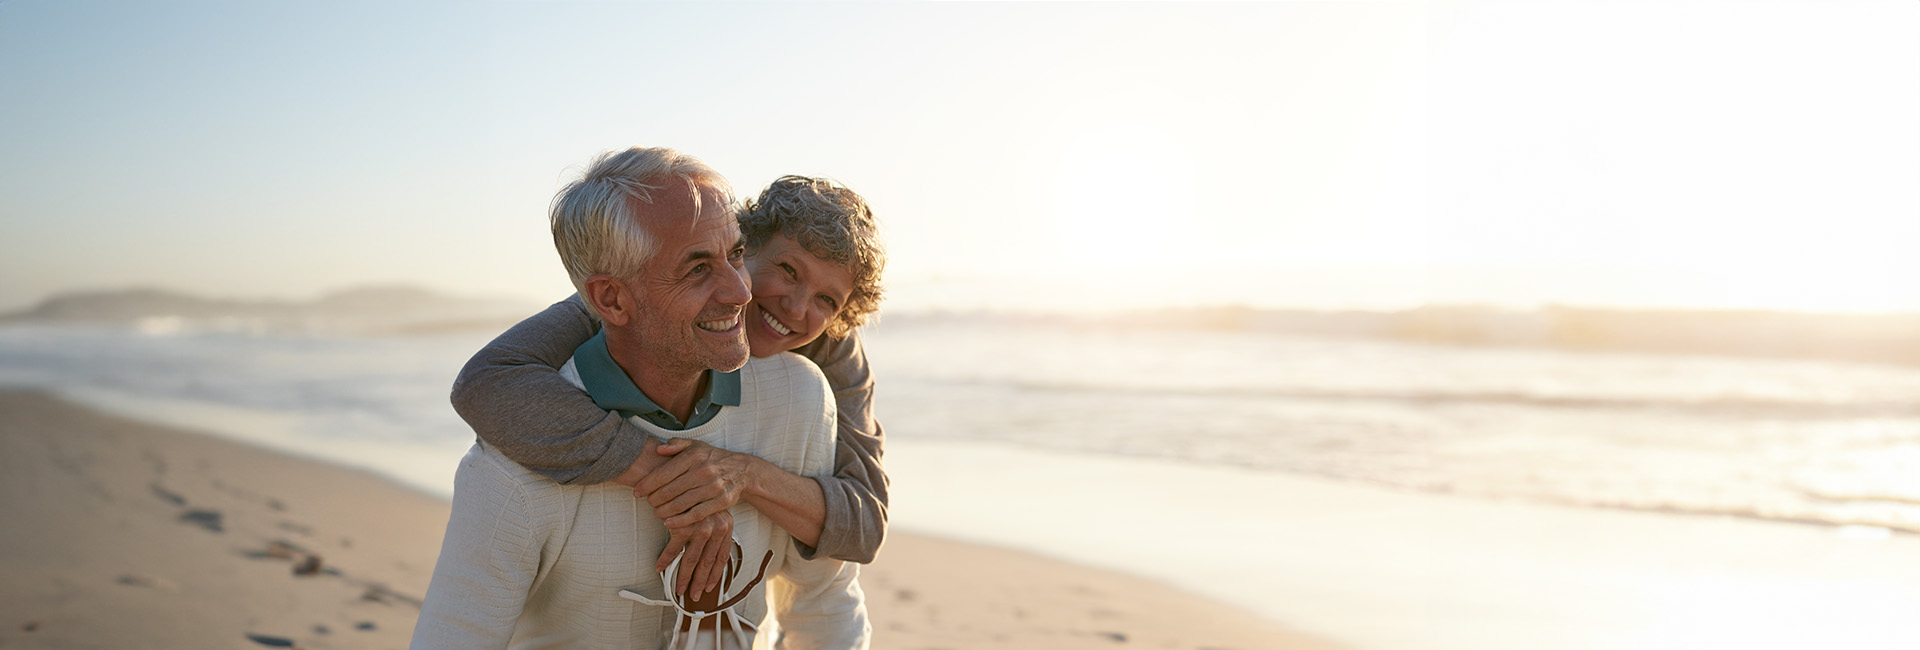 Pension und Ausland: Glückliches älteres Paar am Strand